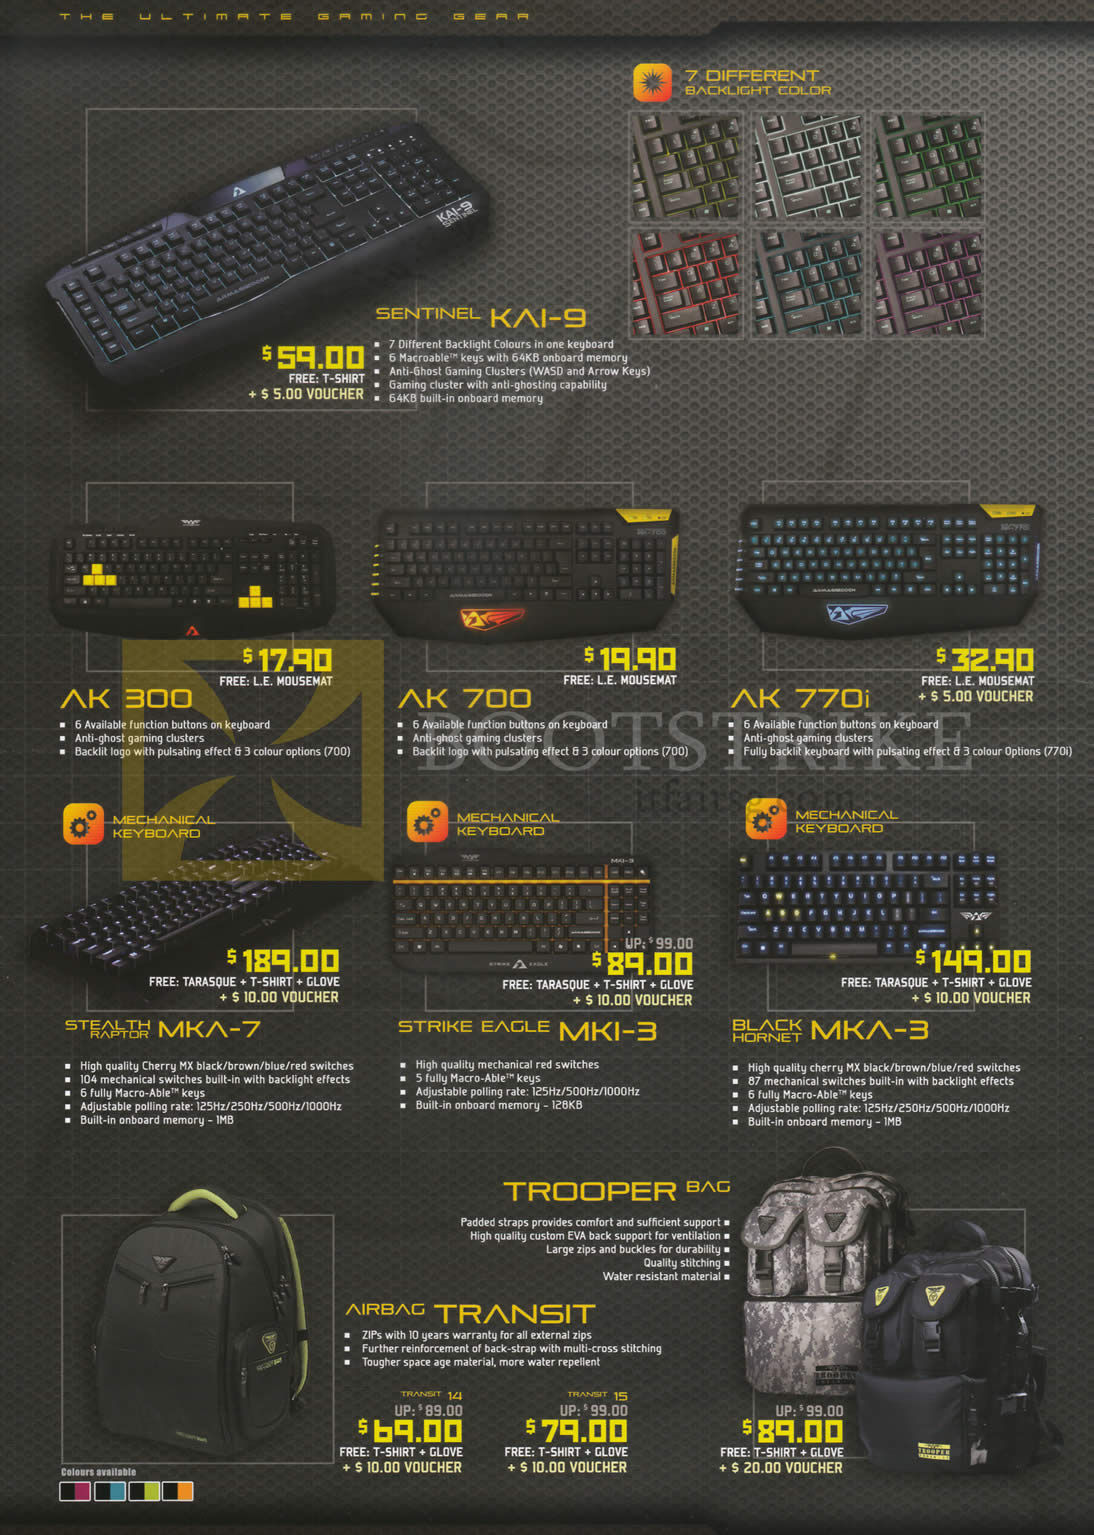 COMEX 2014 price list image brochure of Armageddon Keyboards Sentinel Kai-9, AK300, 700, 770i, Stealth Raptor MKA-7, Strike Eagle MKI-3, Black Hornet MKA-3, Trooper Bag, Airbag Transit,